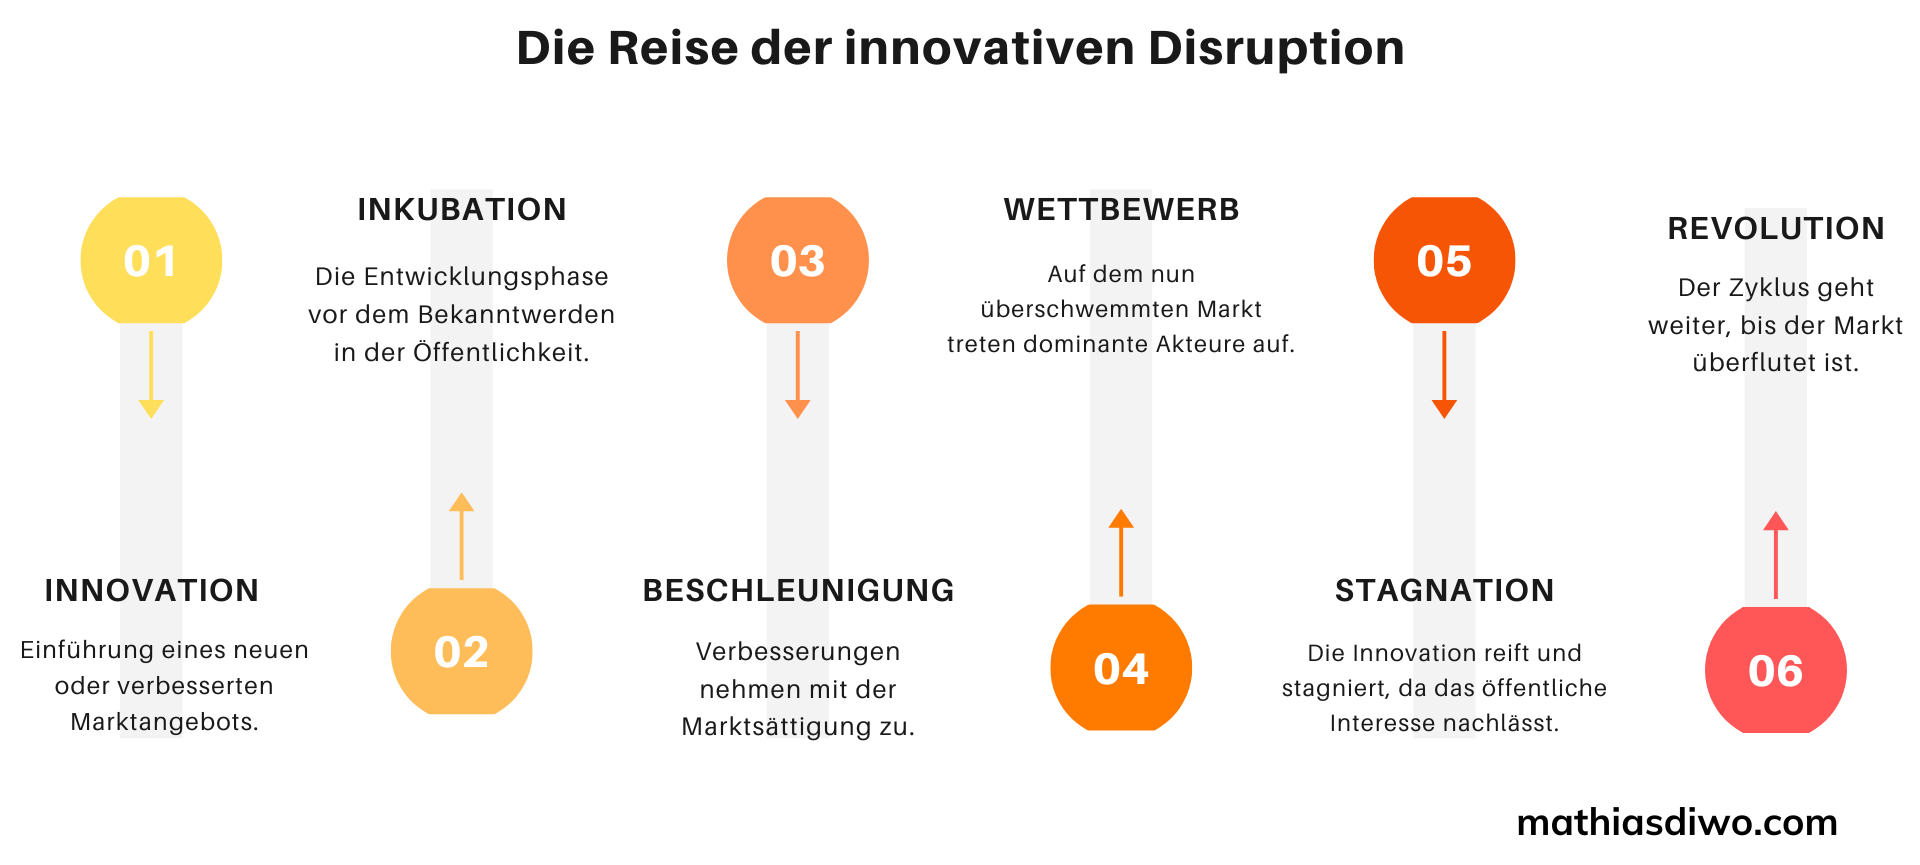 Die Reise der innovativen Disruption -